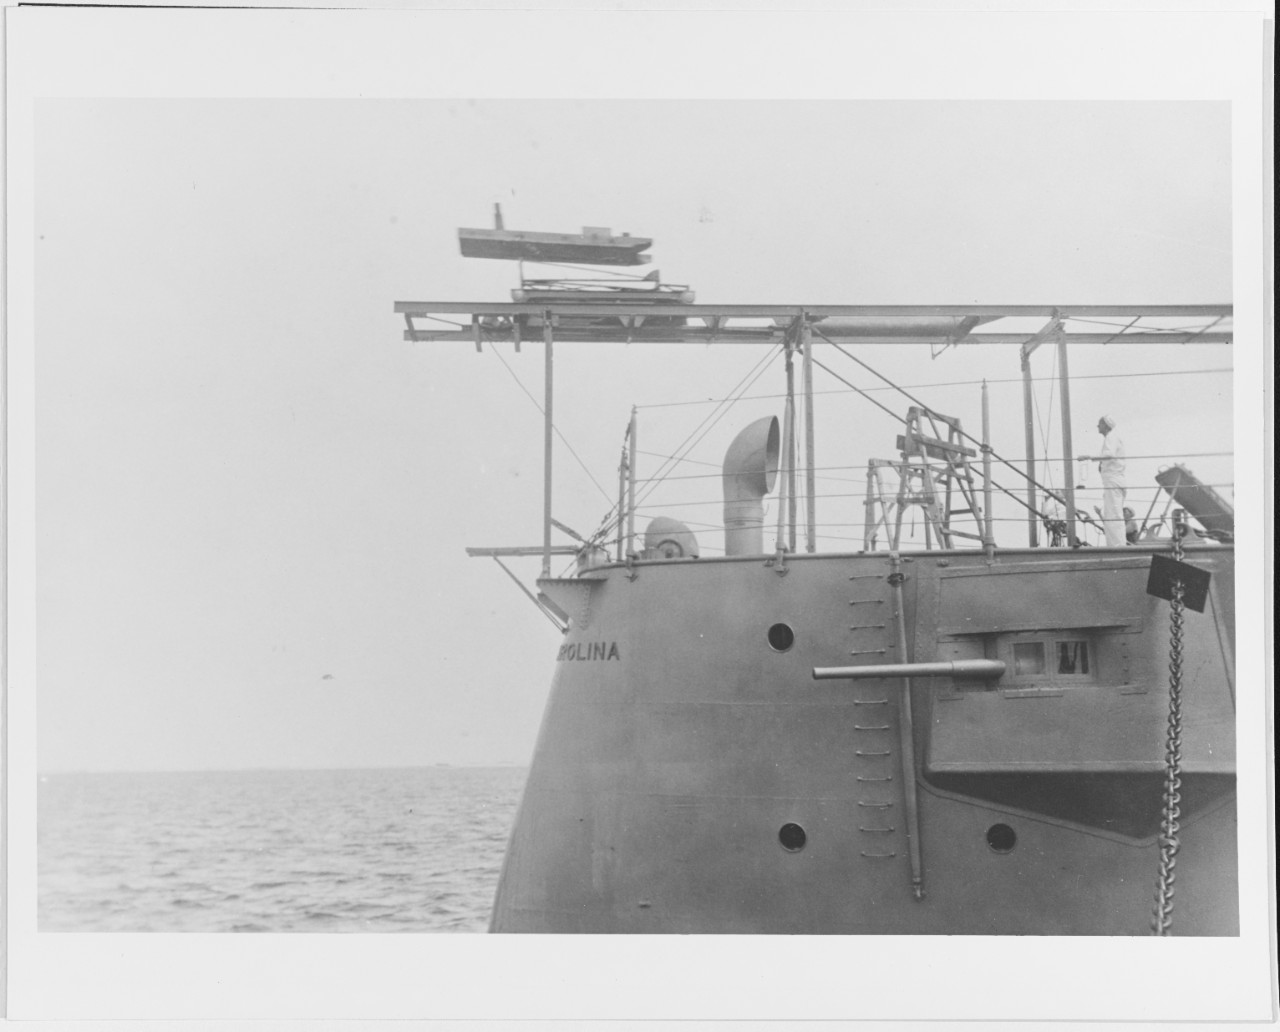 USS NORTH CAROLINA (CA-12)